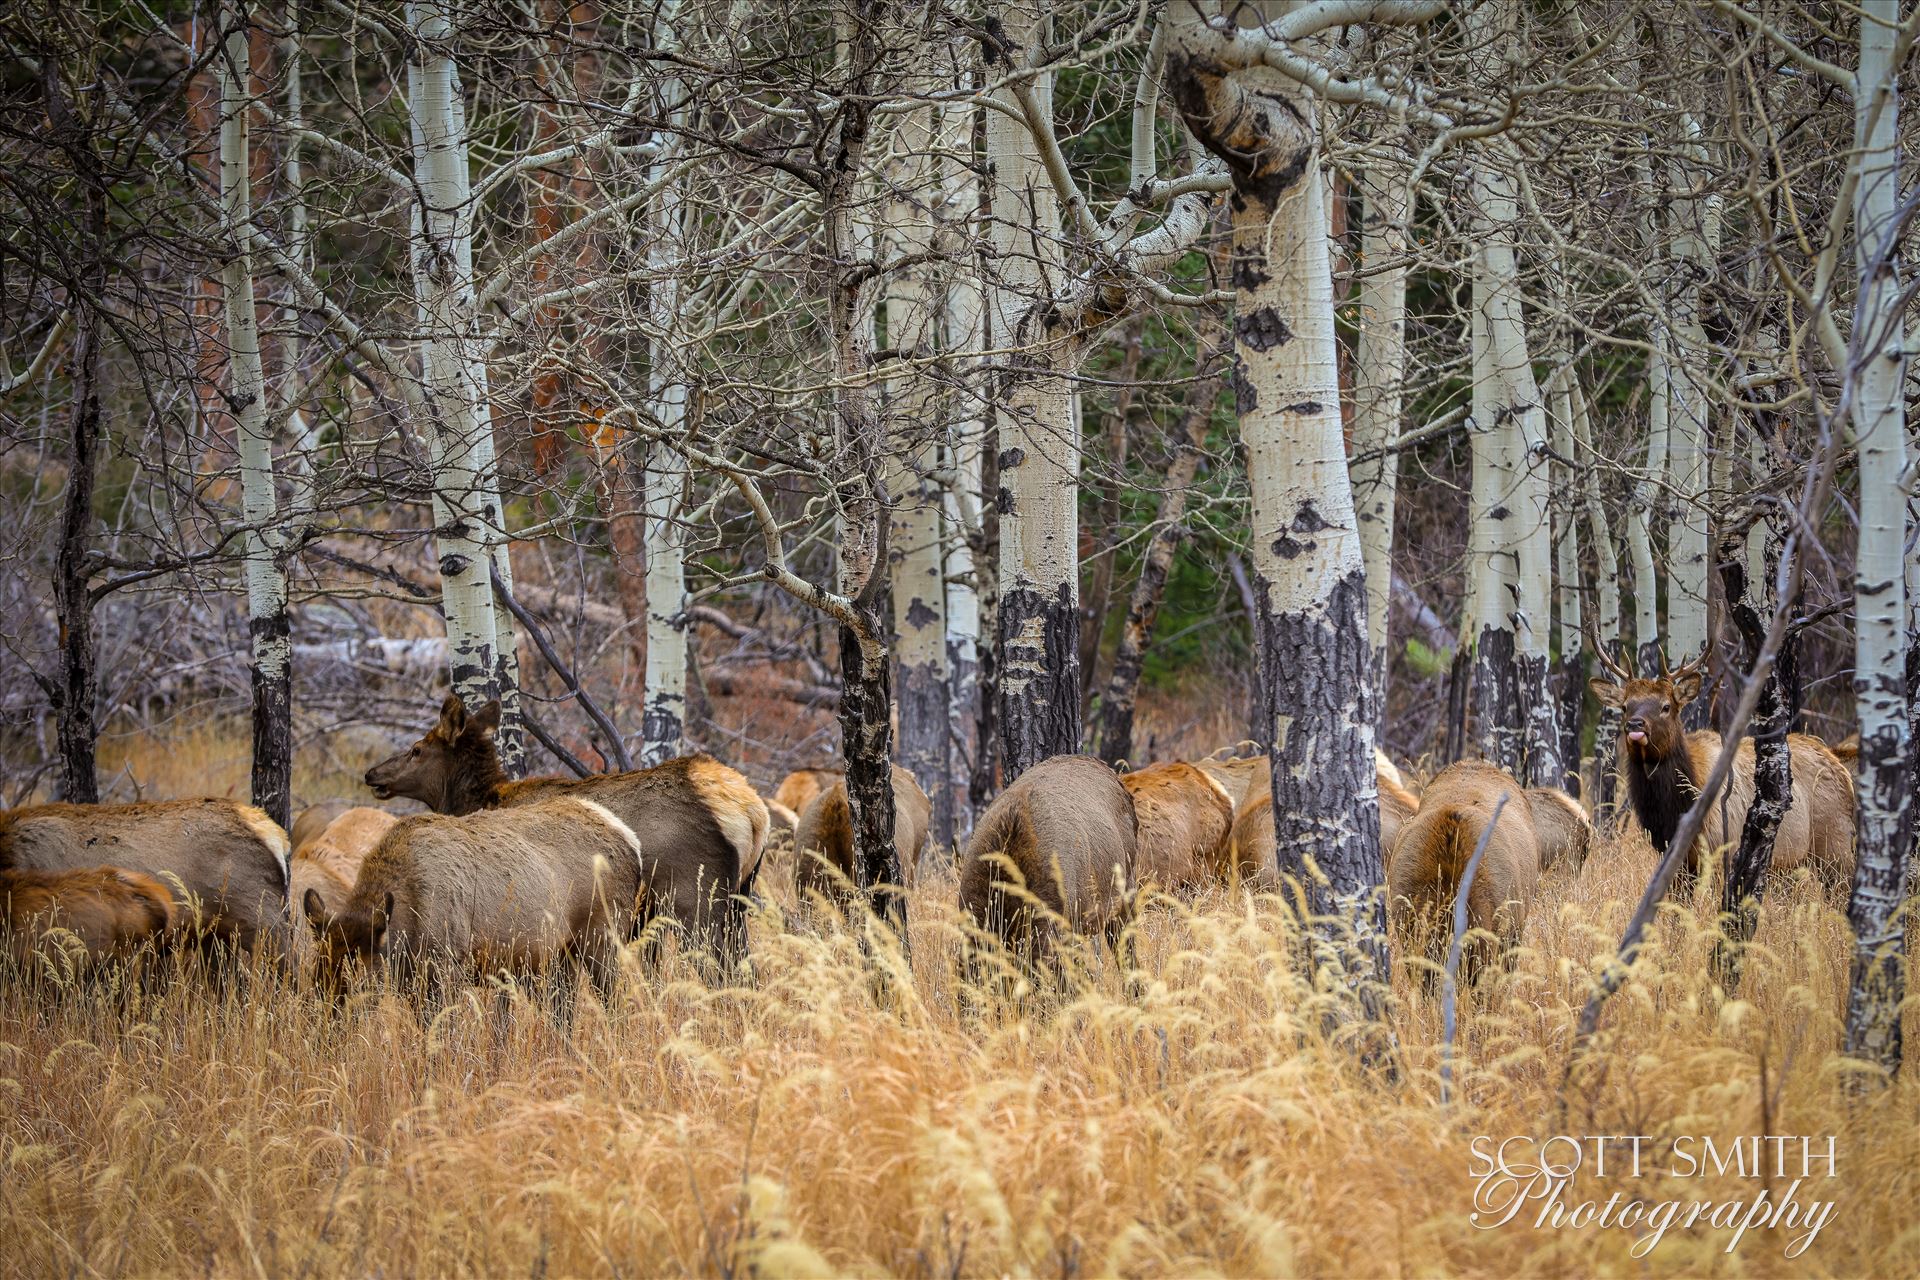 Sunday Elk No 03 A heard of Elk near the entrance to Rocky Mountain National Park, Estes Park, Colorado. by Scott Smith Photos